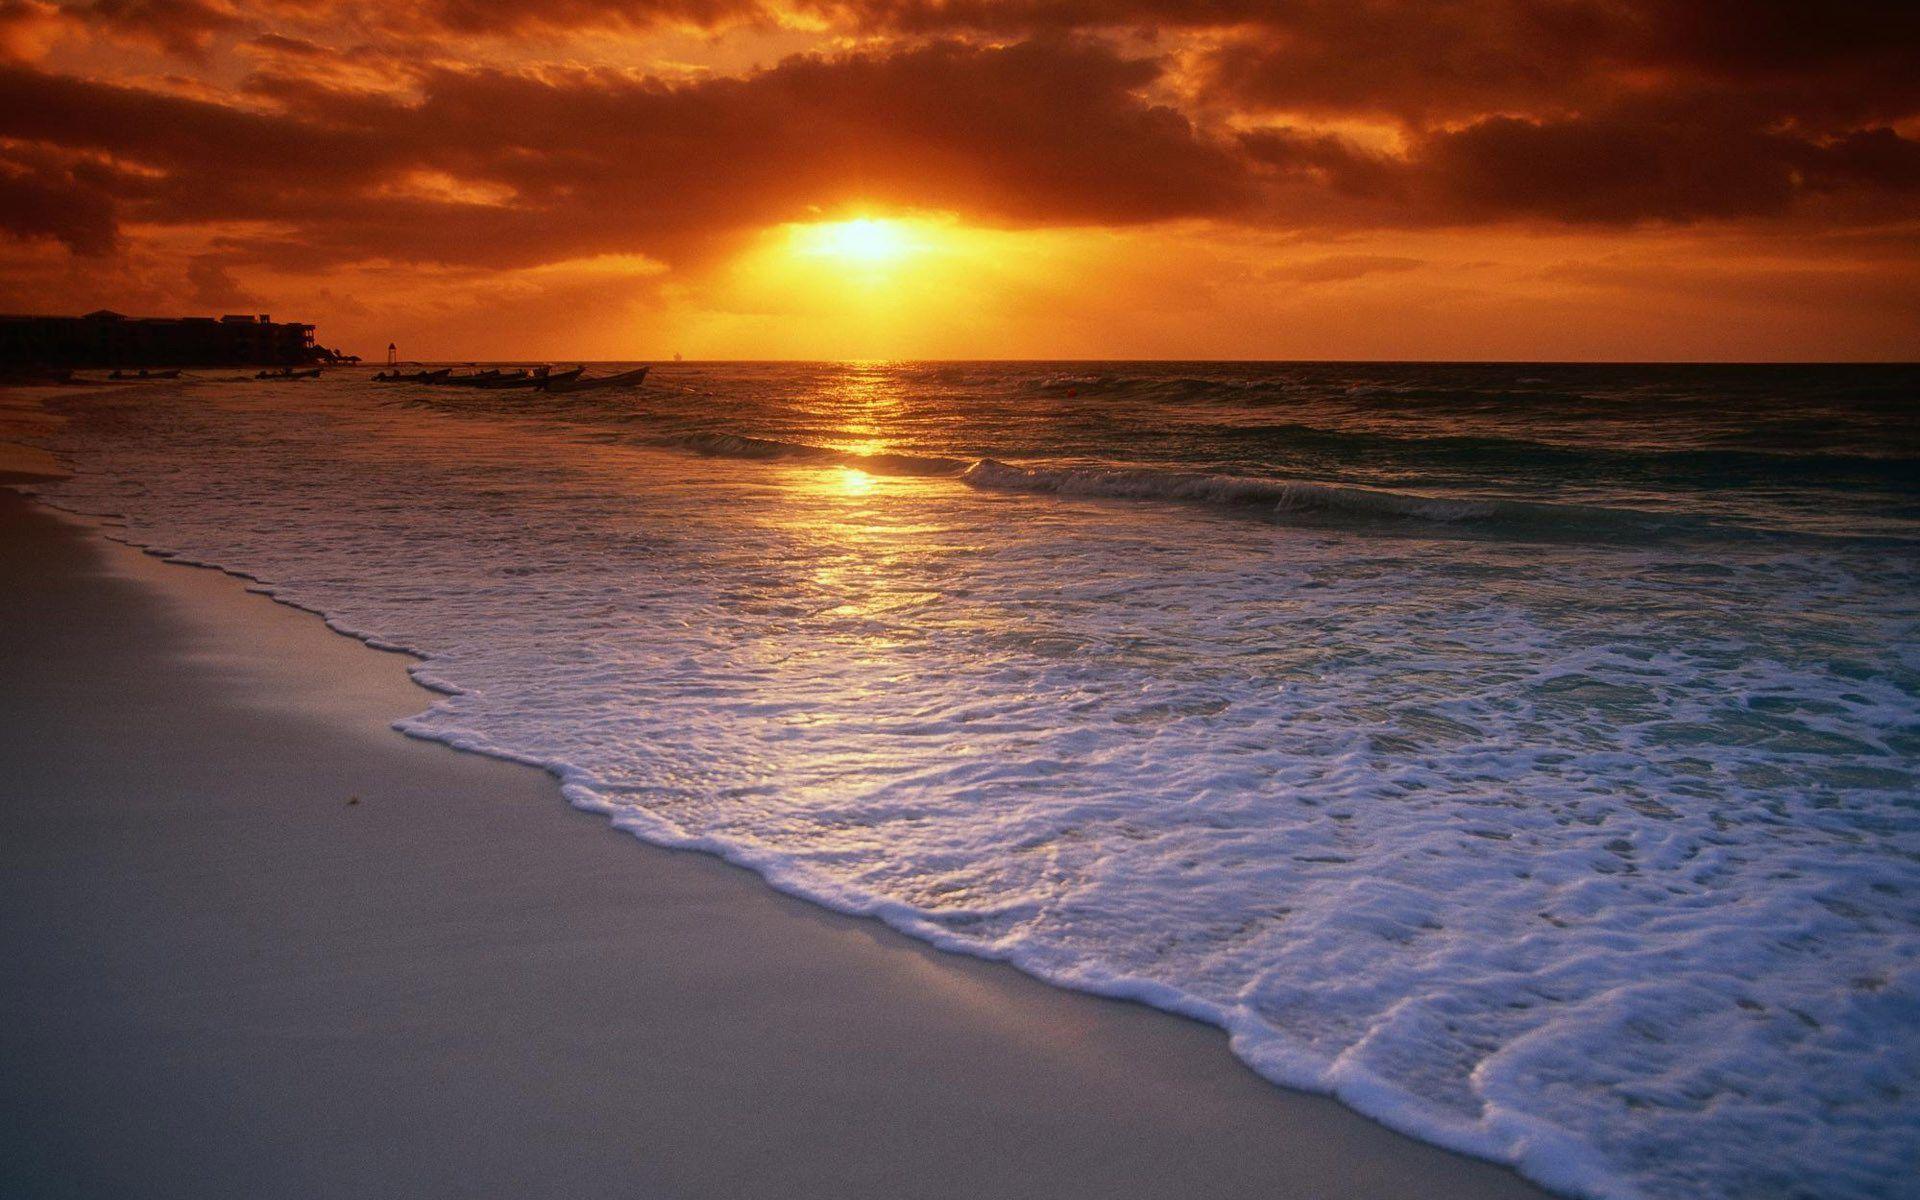 Tropical Beach Sunset HD Wallpaper For Desktop Background